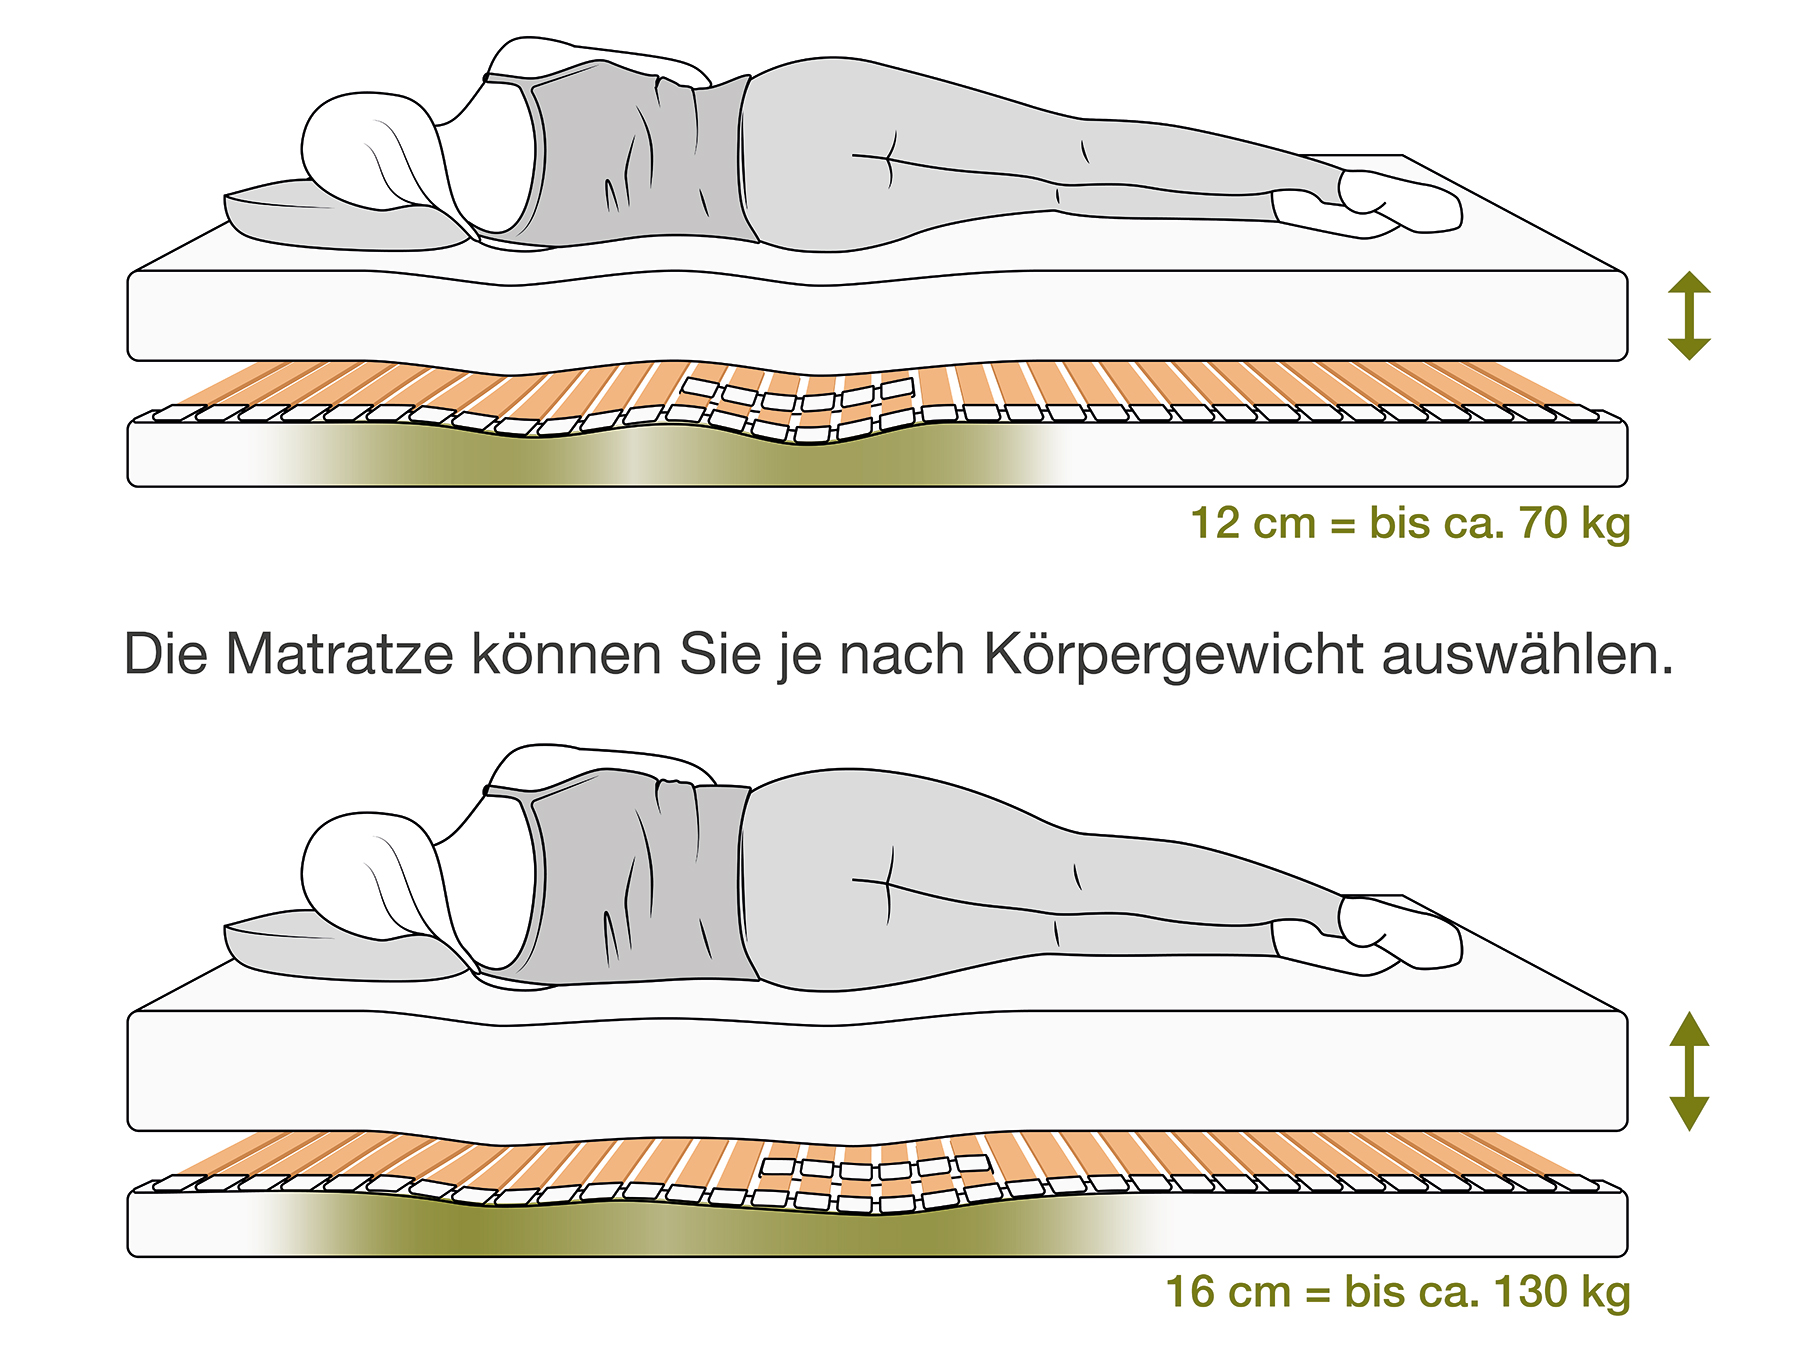 Schulter- und Beckenabsenkung bei einem Schlafsystem